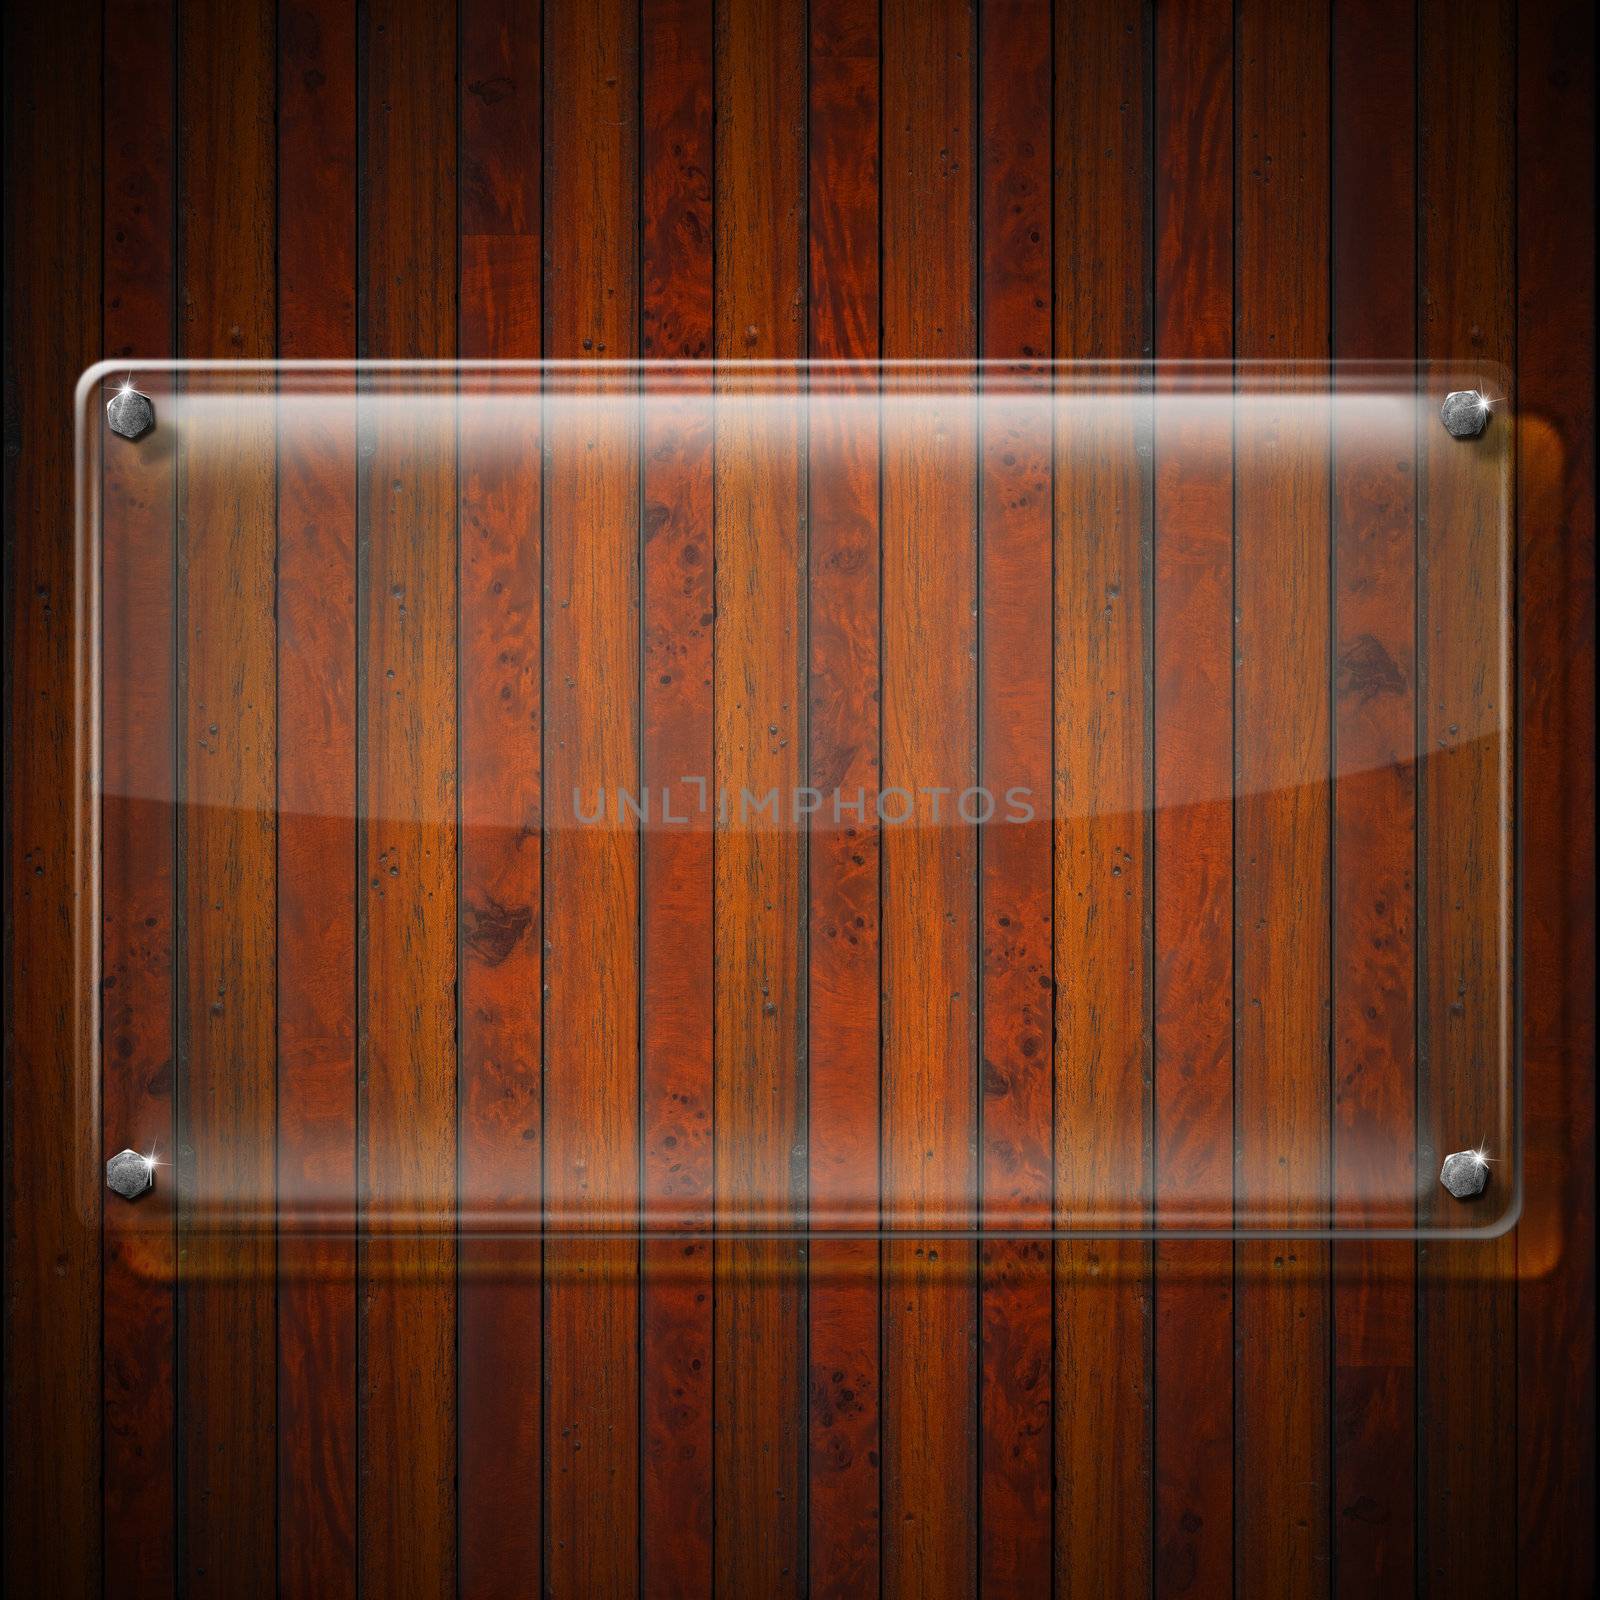 Glass or plexiglas framework on wooden vintage background

